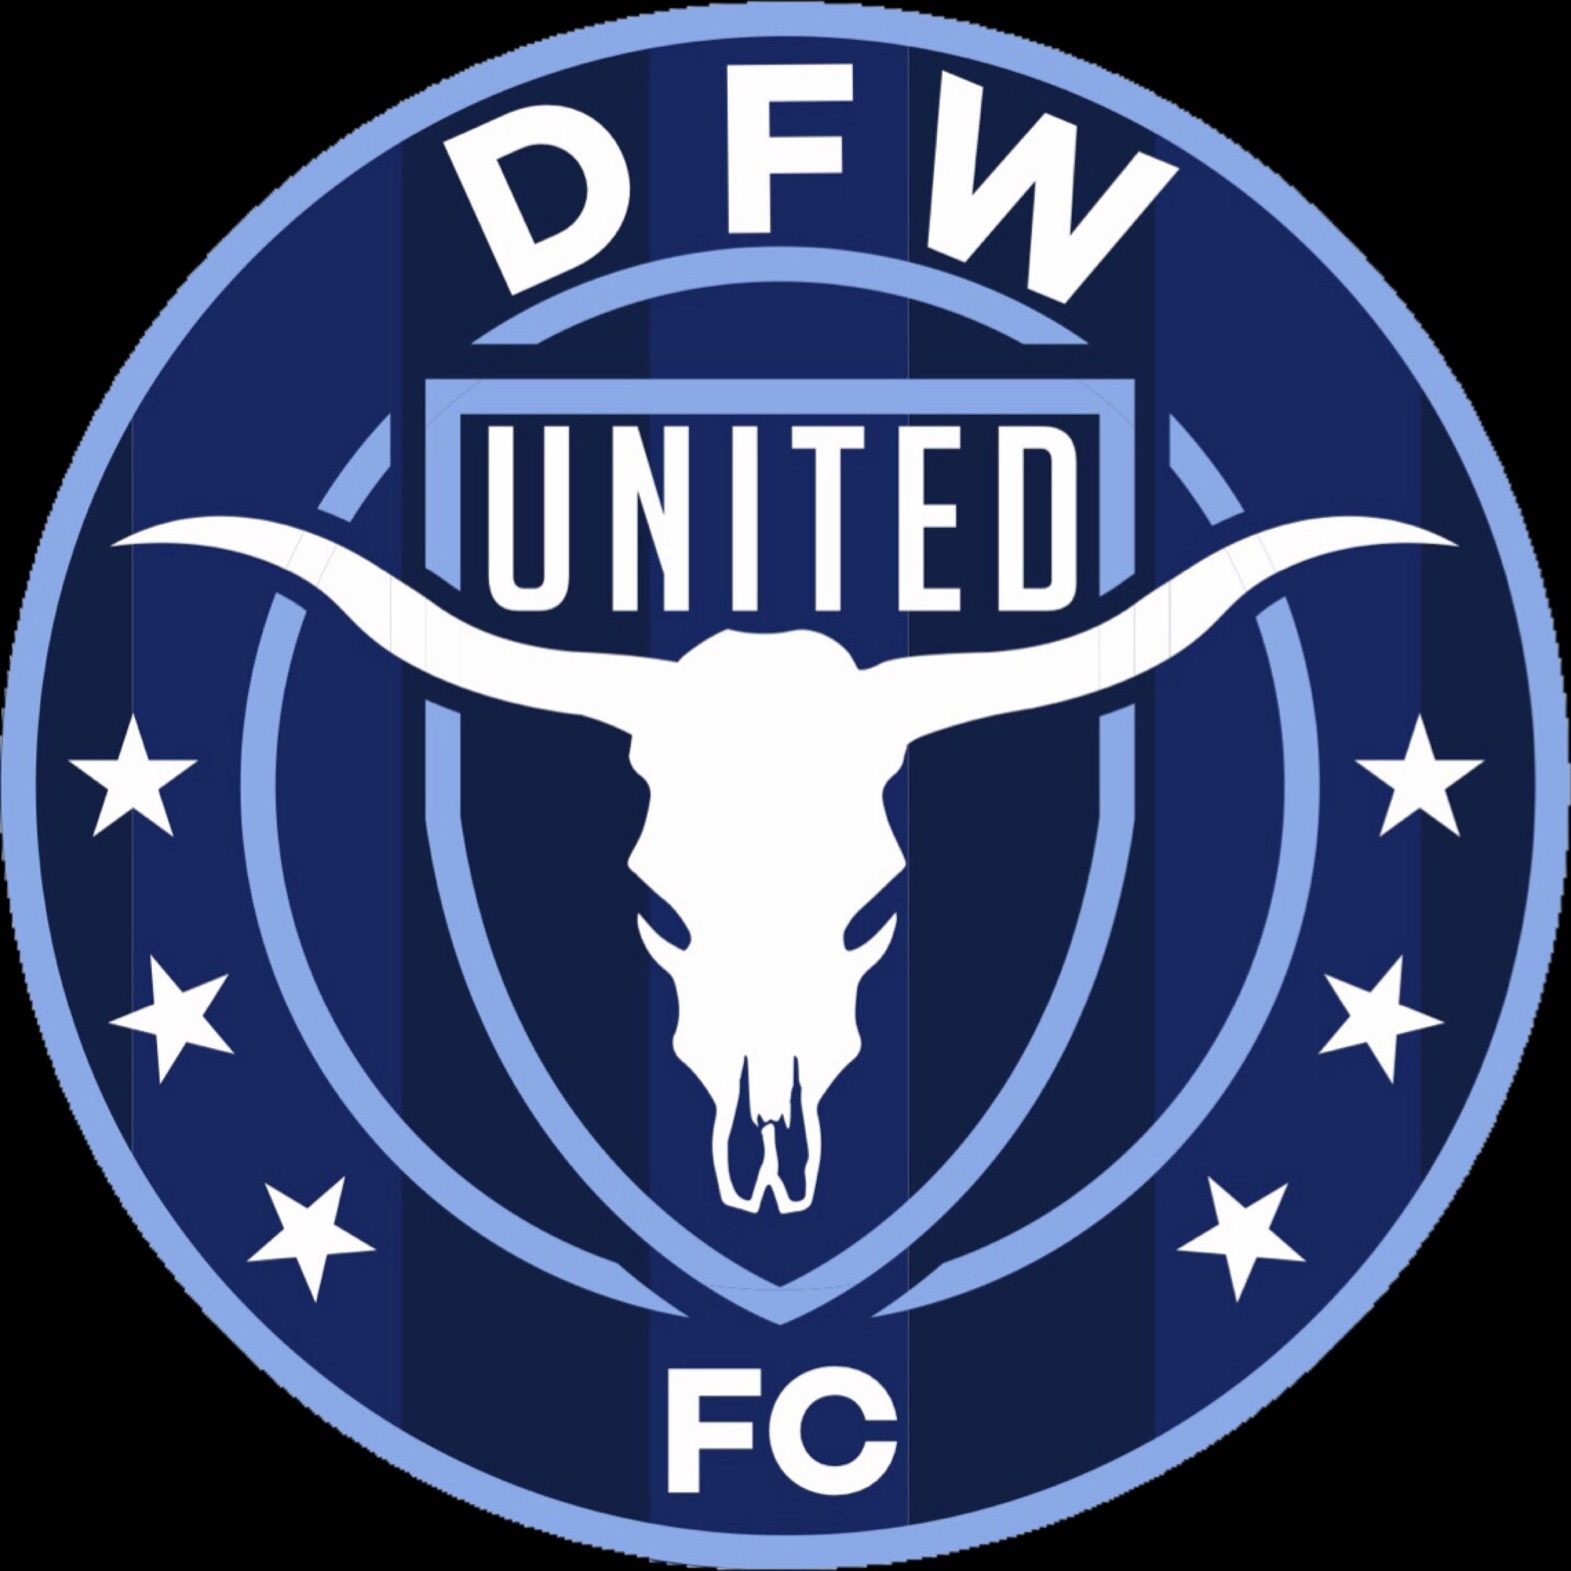 DFW UNITED FC team badge